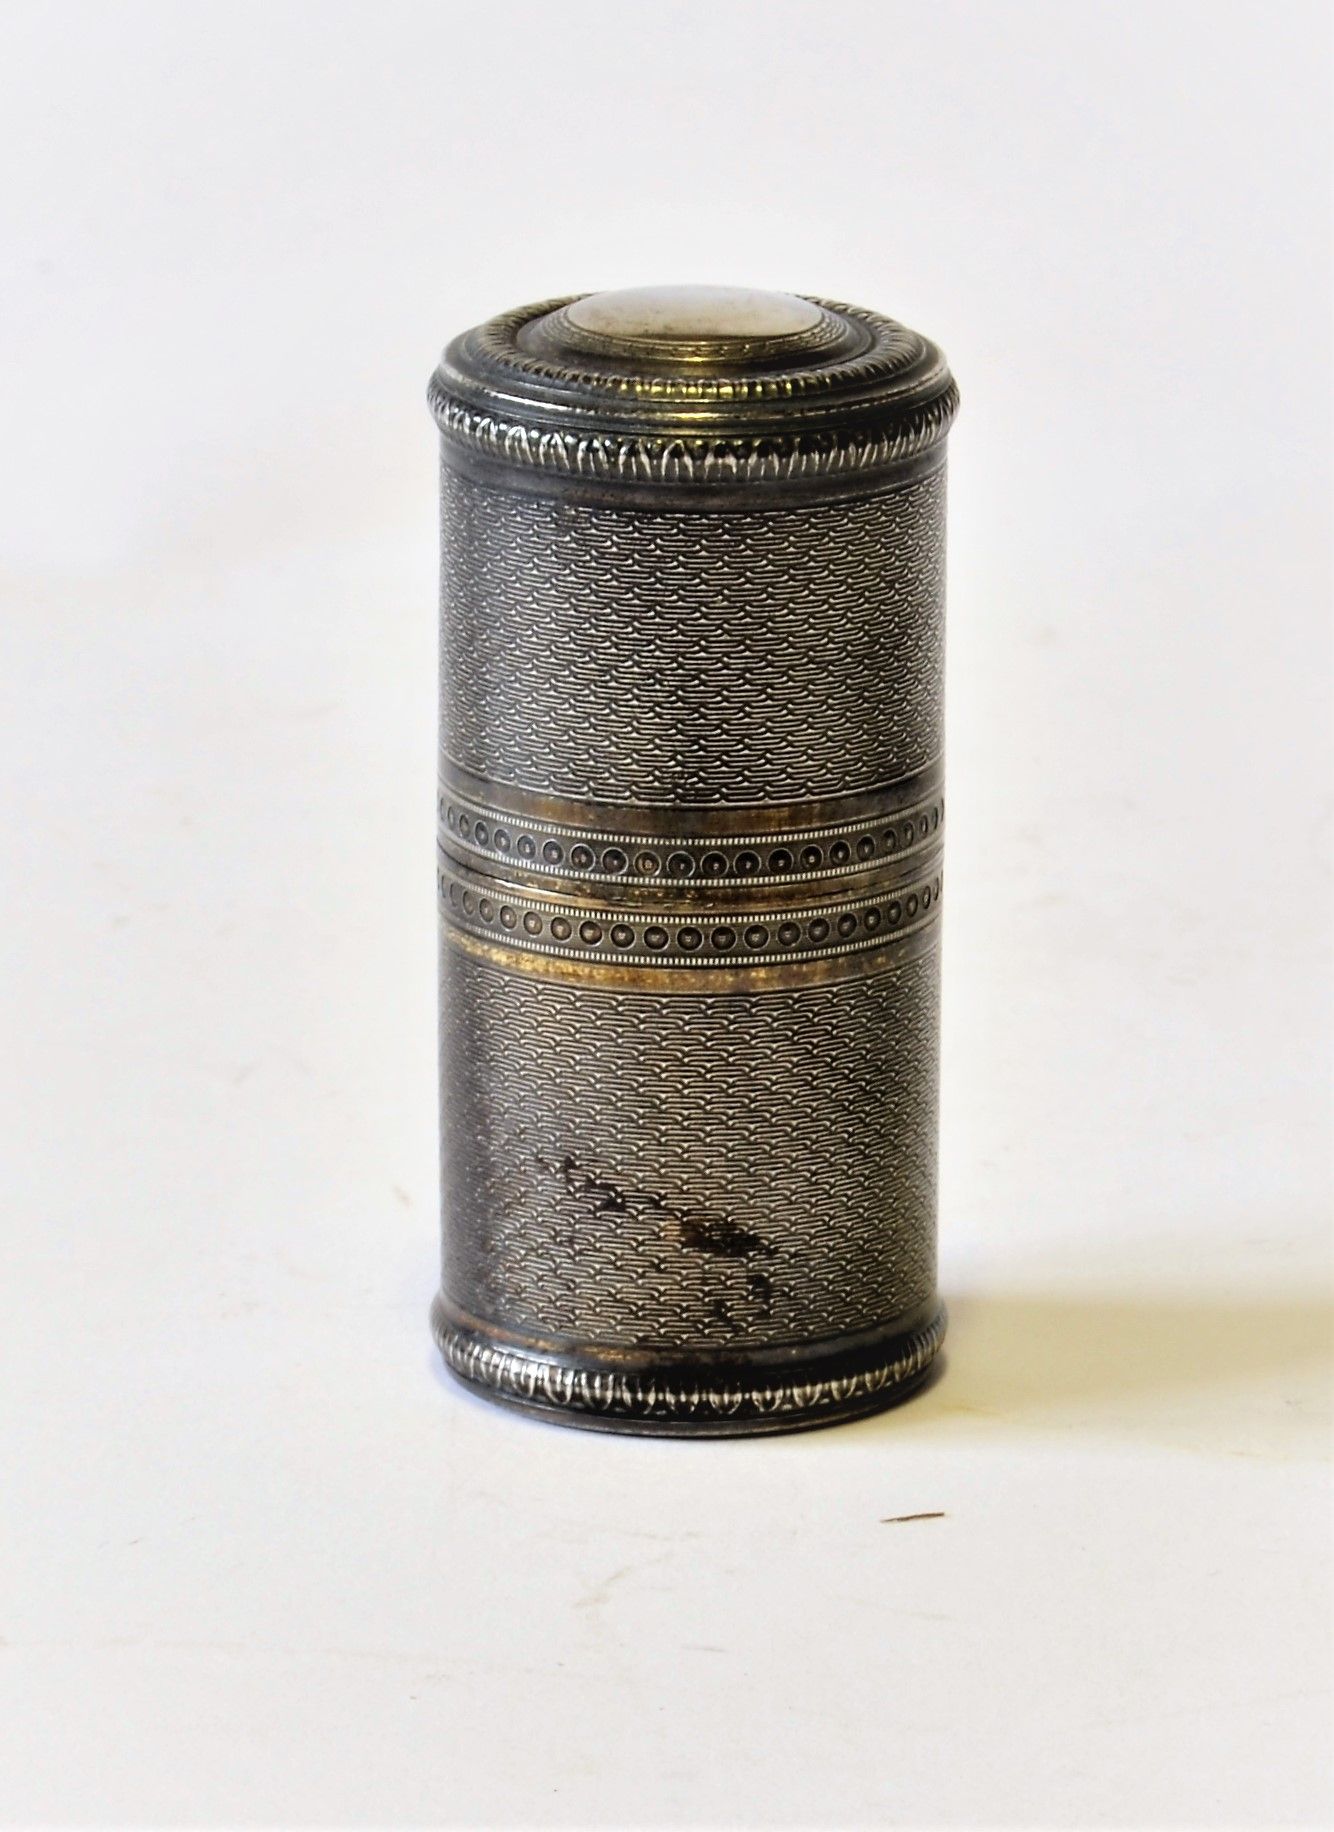 Null 
银色的圆柱形箱子里有三个水晶香水瓶和塞子。内有银质游丝，圆柱形，有扭索纹。米纳瓦头像印记，1838年第1个标题；高7.5厘米